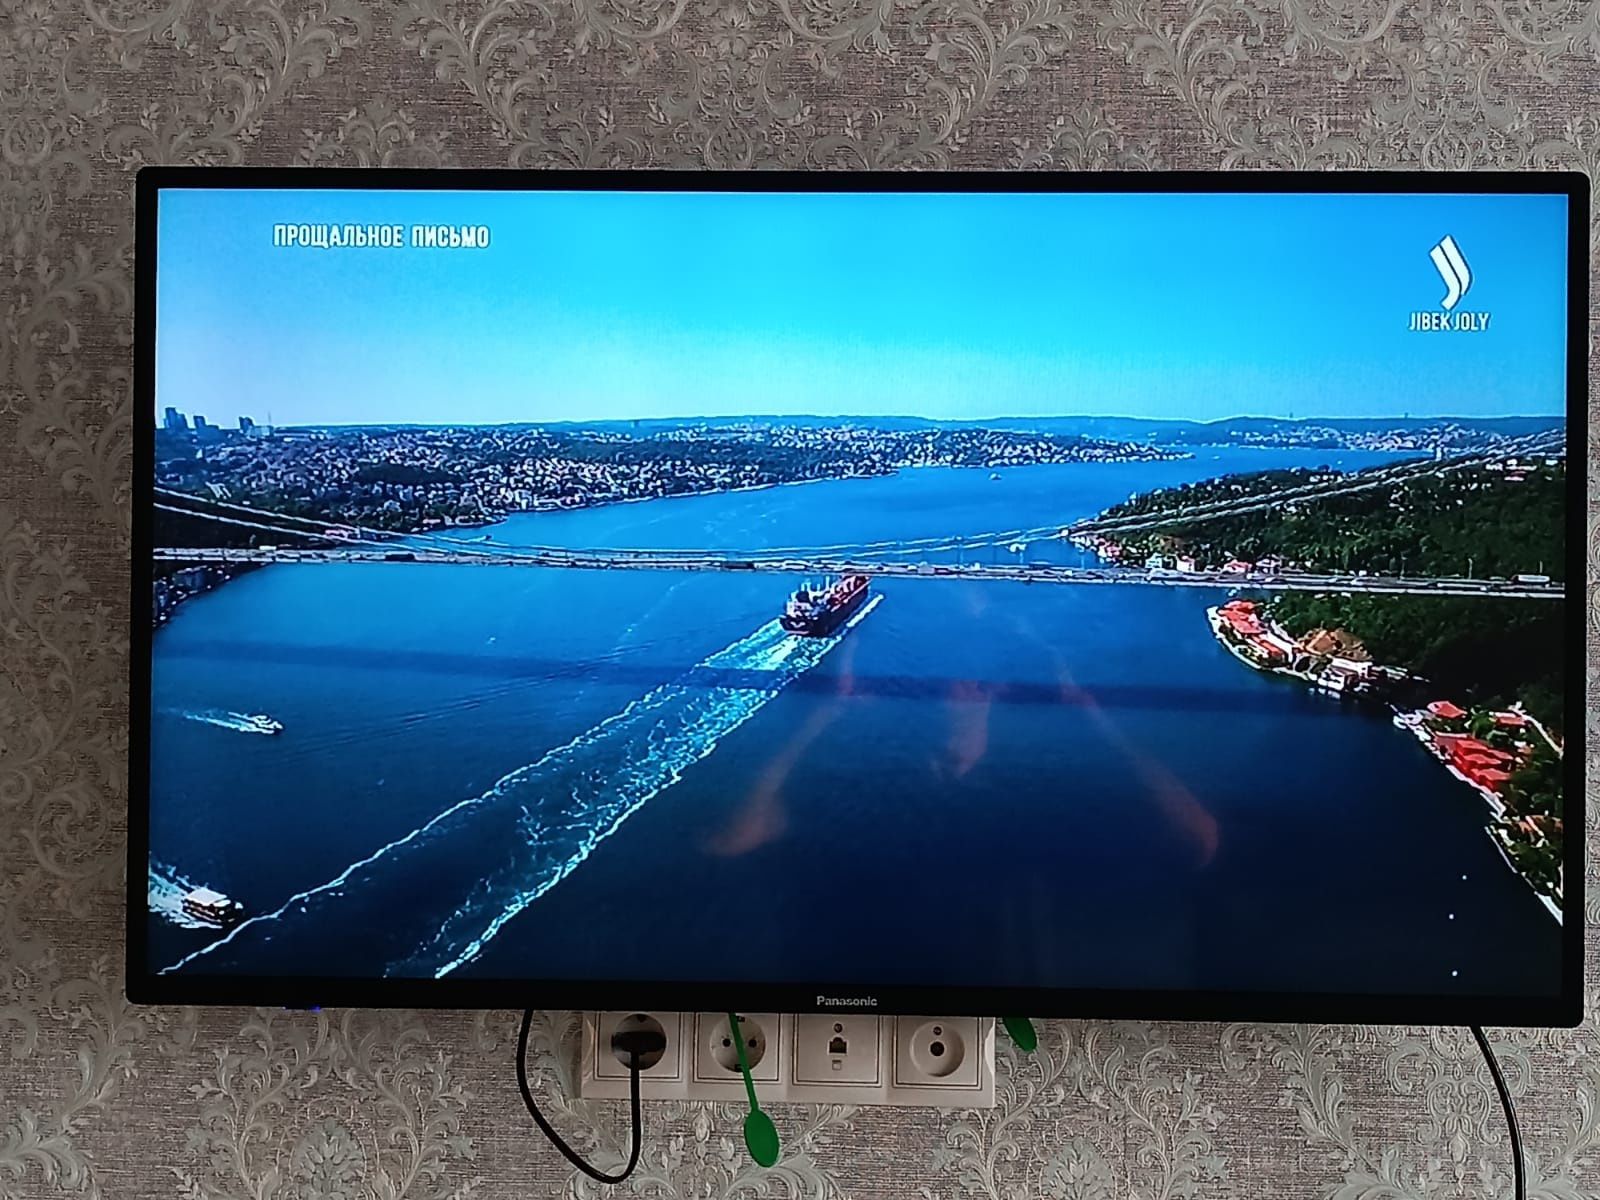 Телевизор Panasonic ЖК
Жидкокриссталлический,диагональ 110 см.С